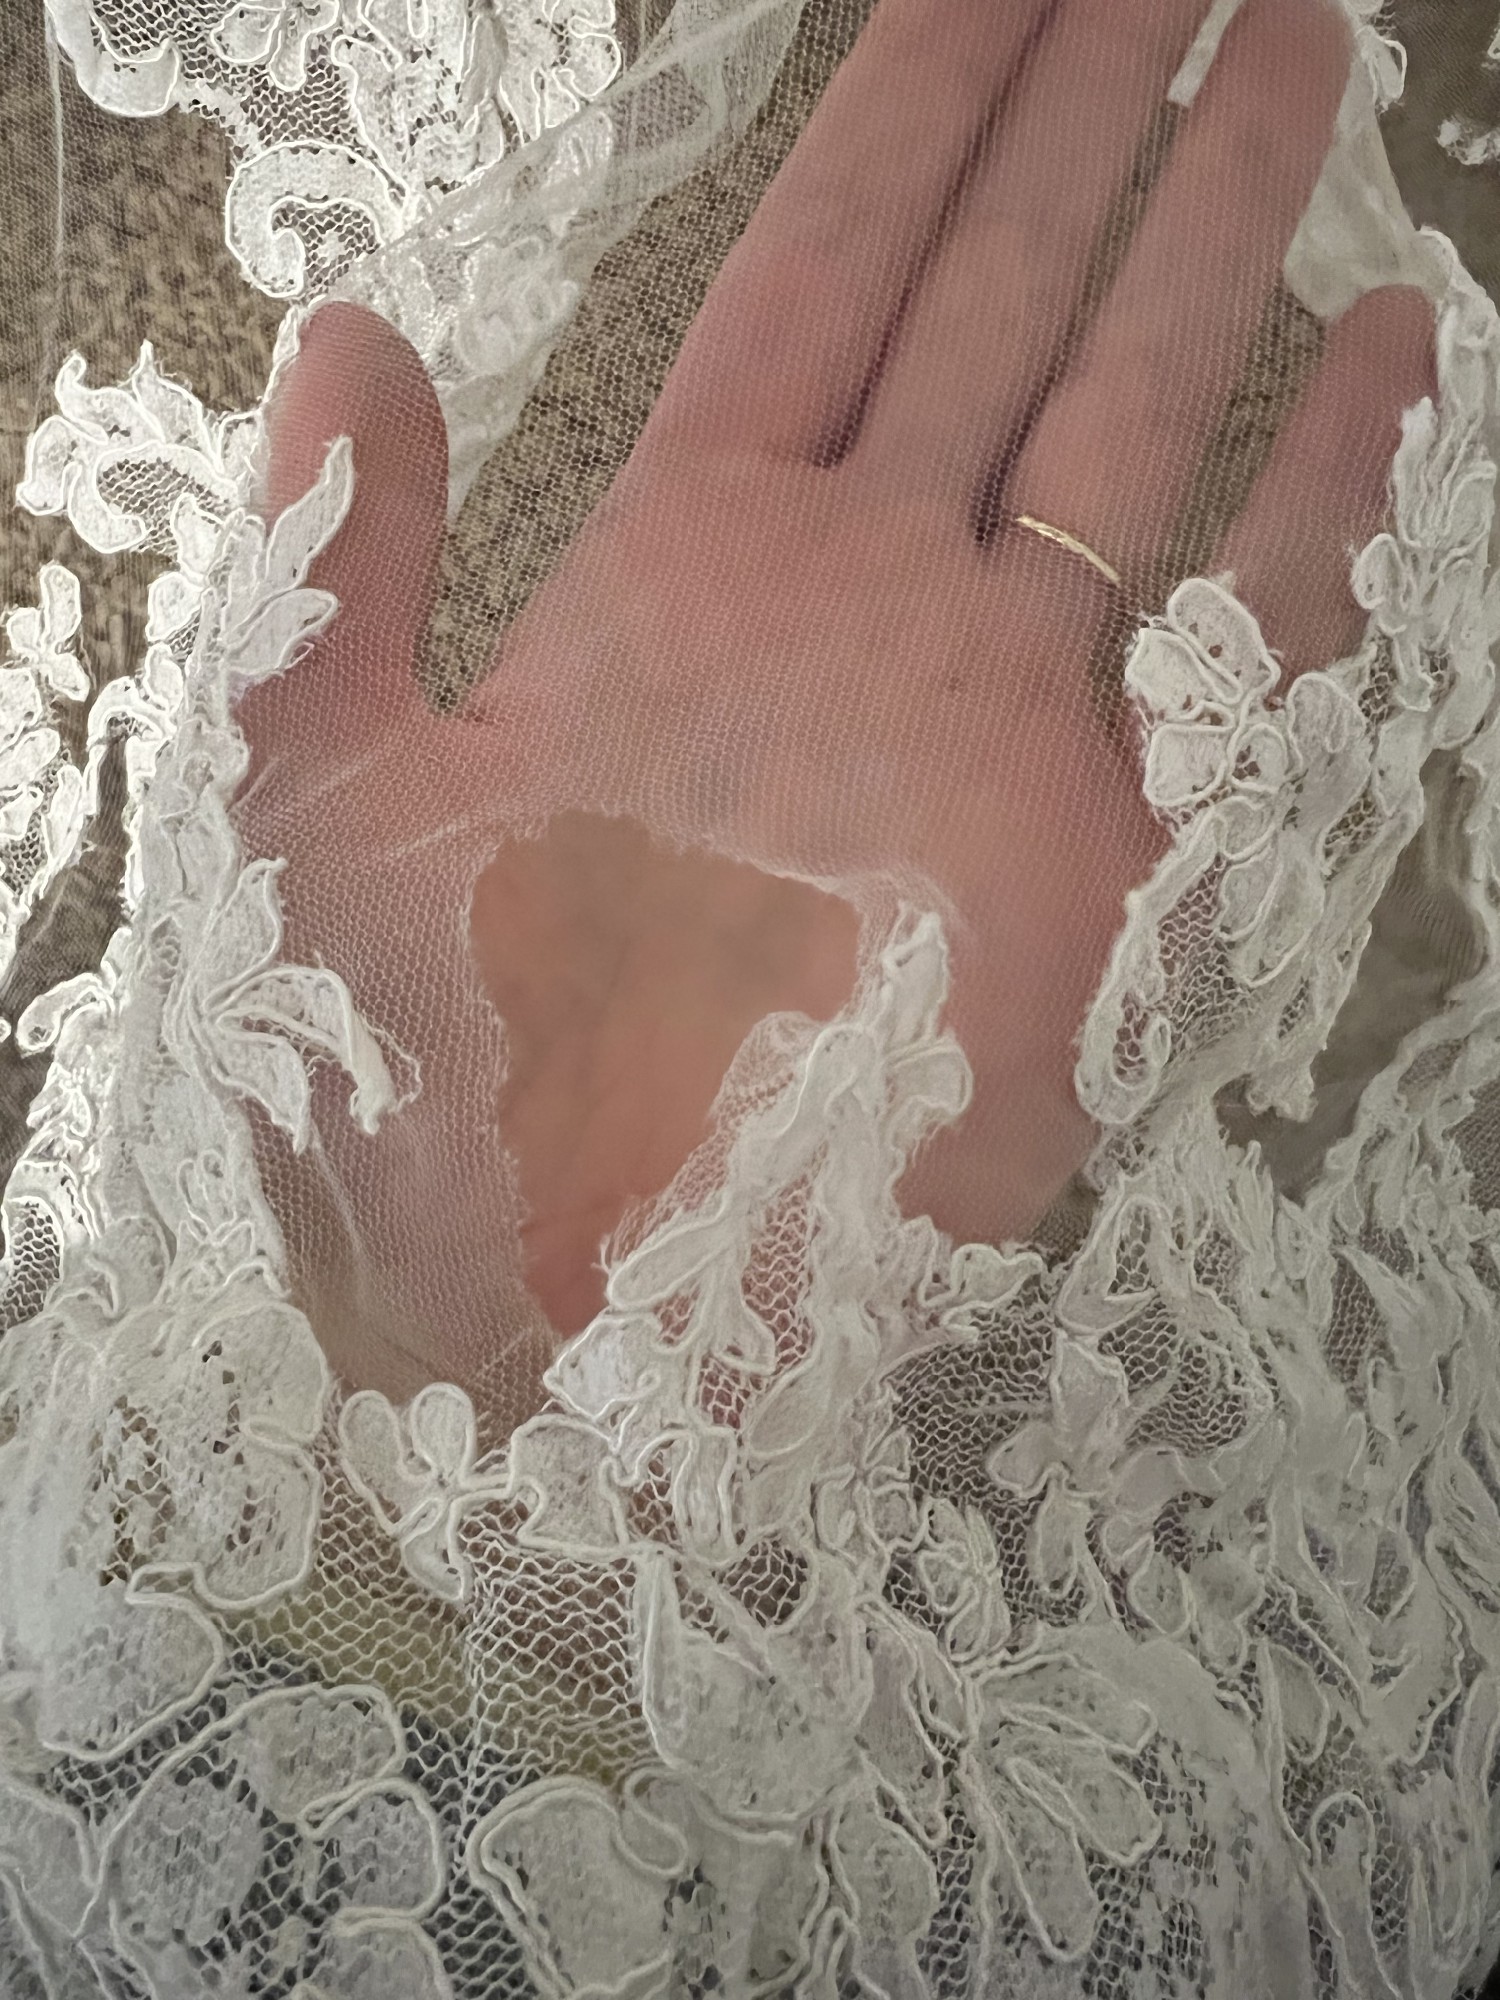 DIY Lace Veil